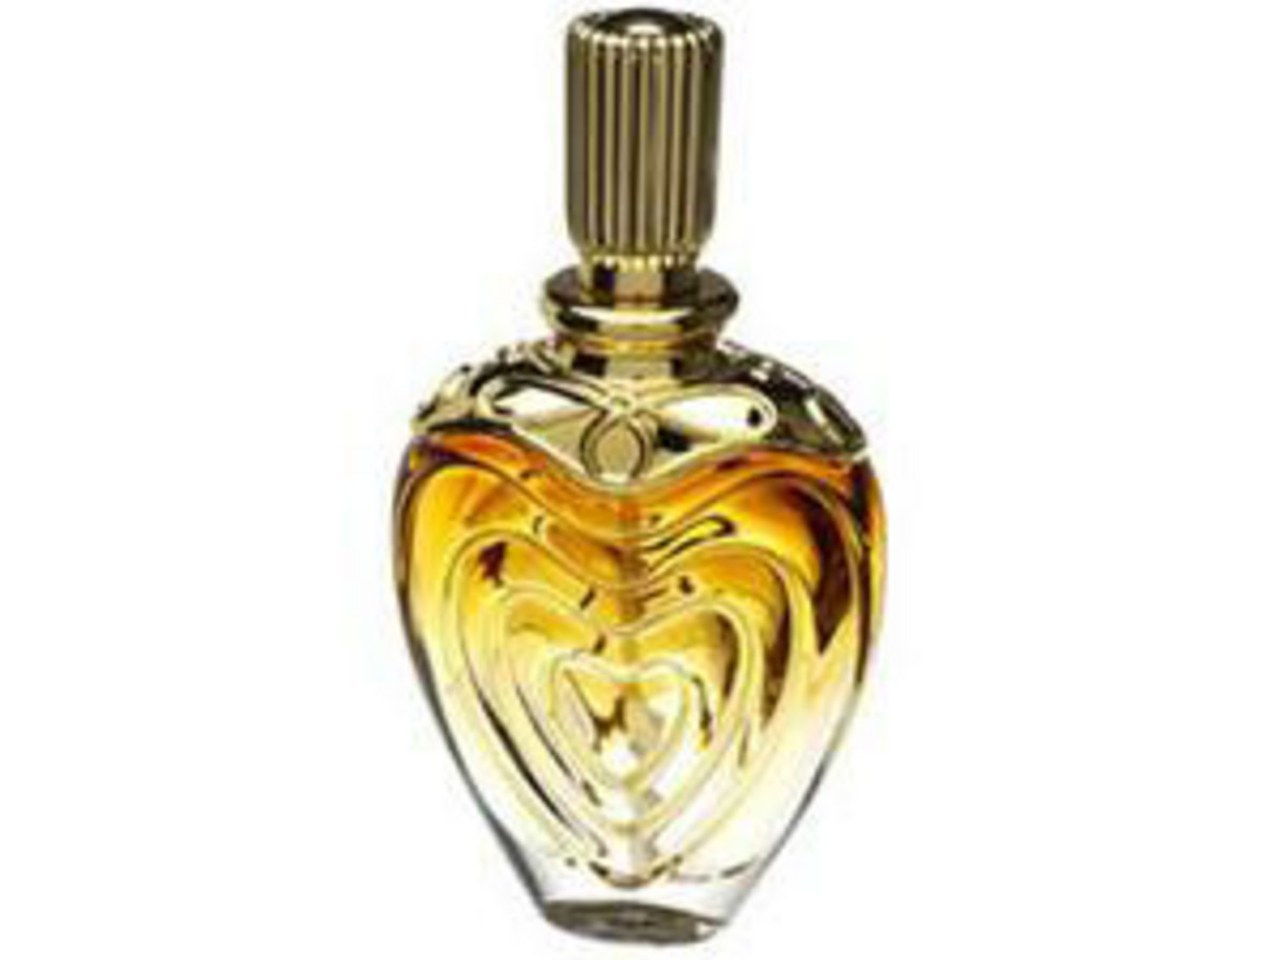 ESCADA collection perfume